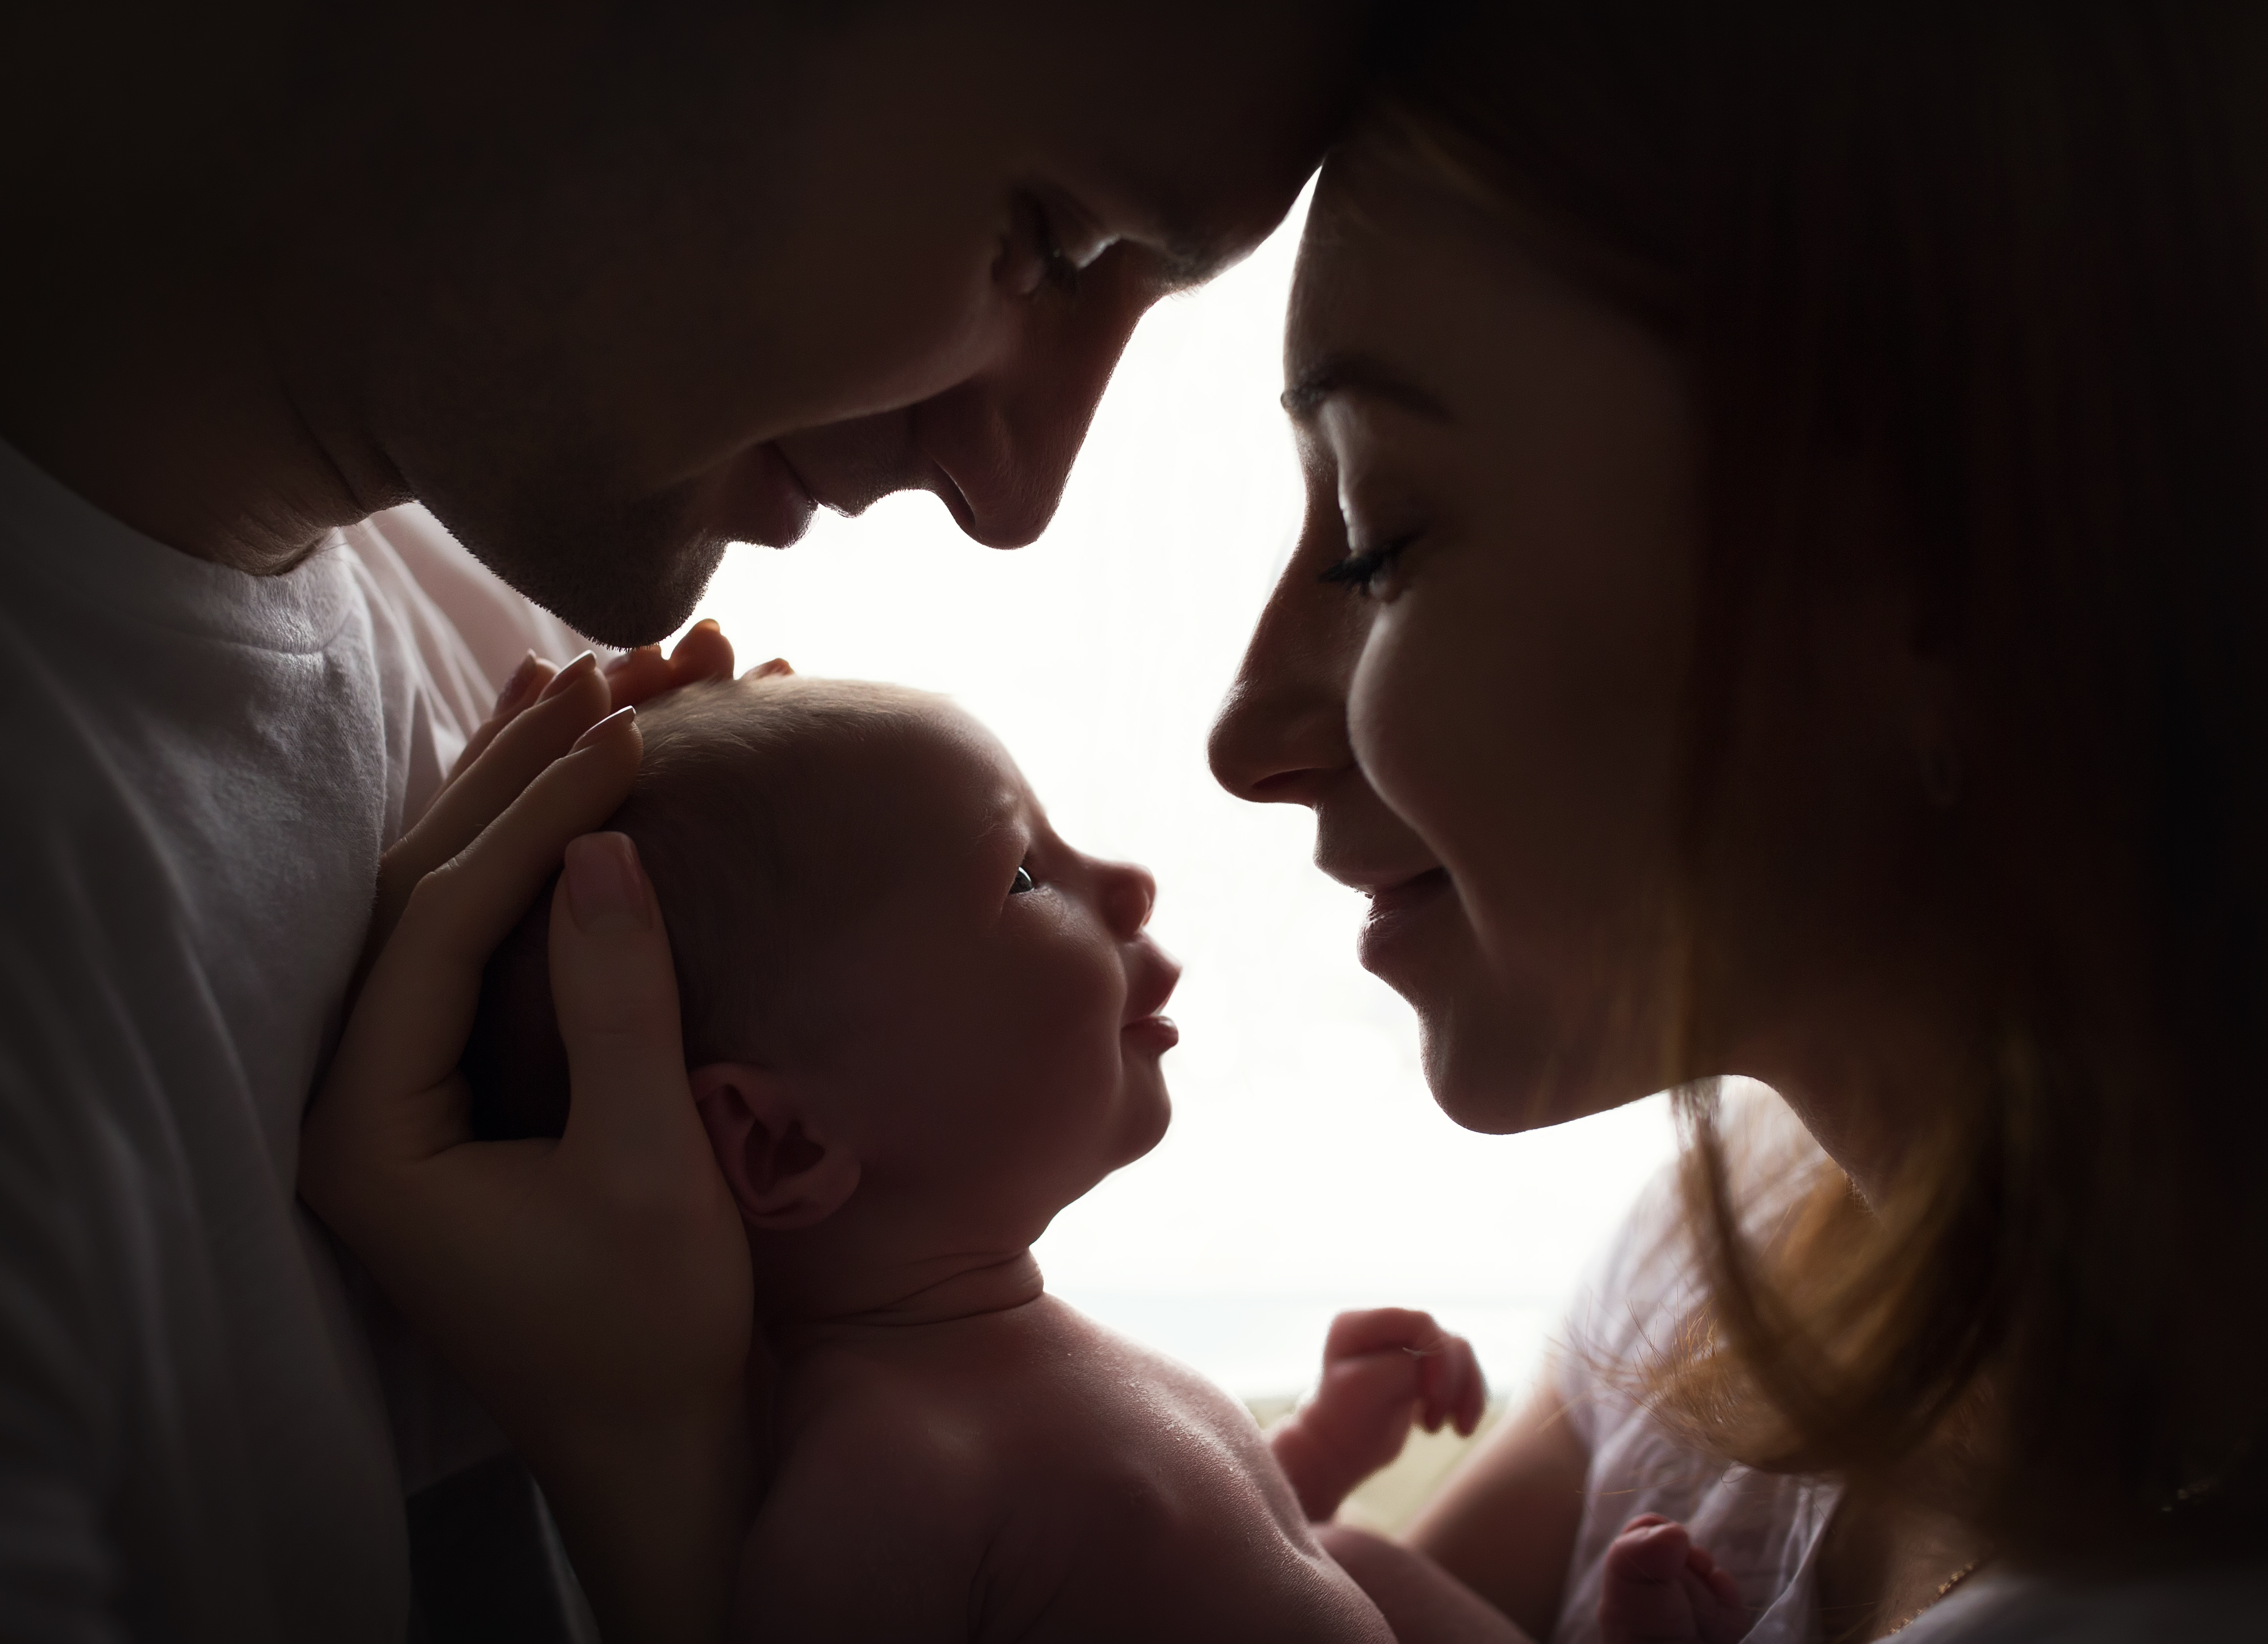 Eine Silhouette glücklicher Eltern mit einem neugeborenen Baby | Quelle: Shutterstock